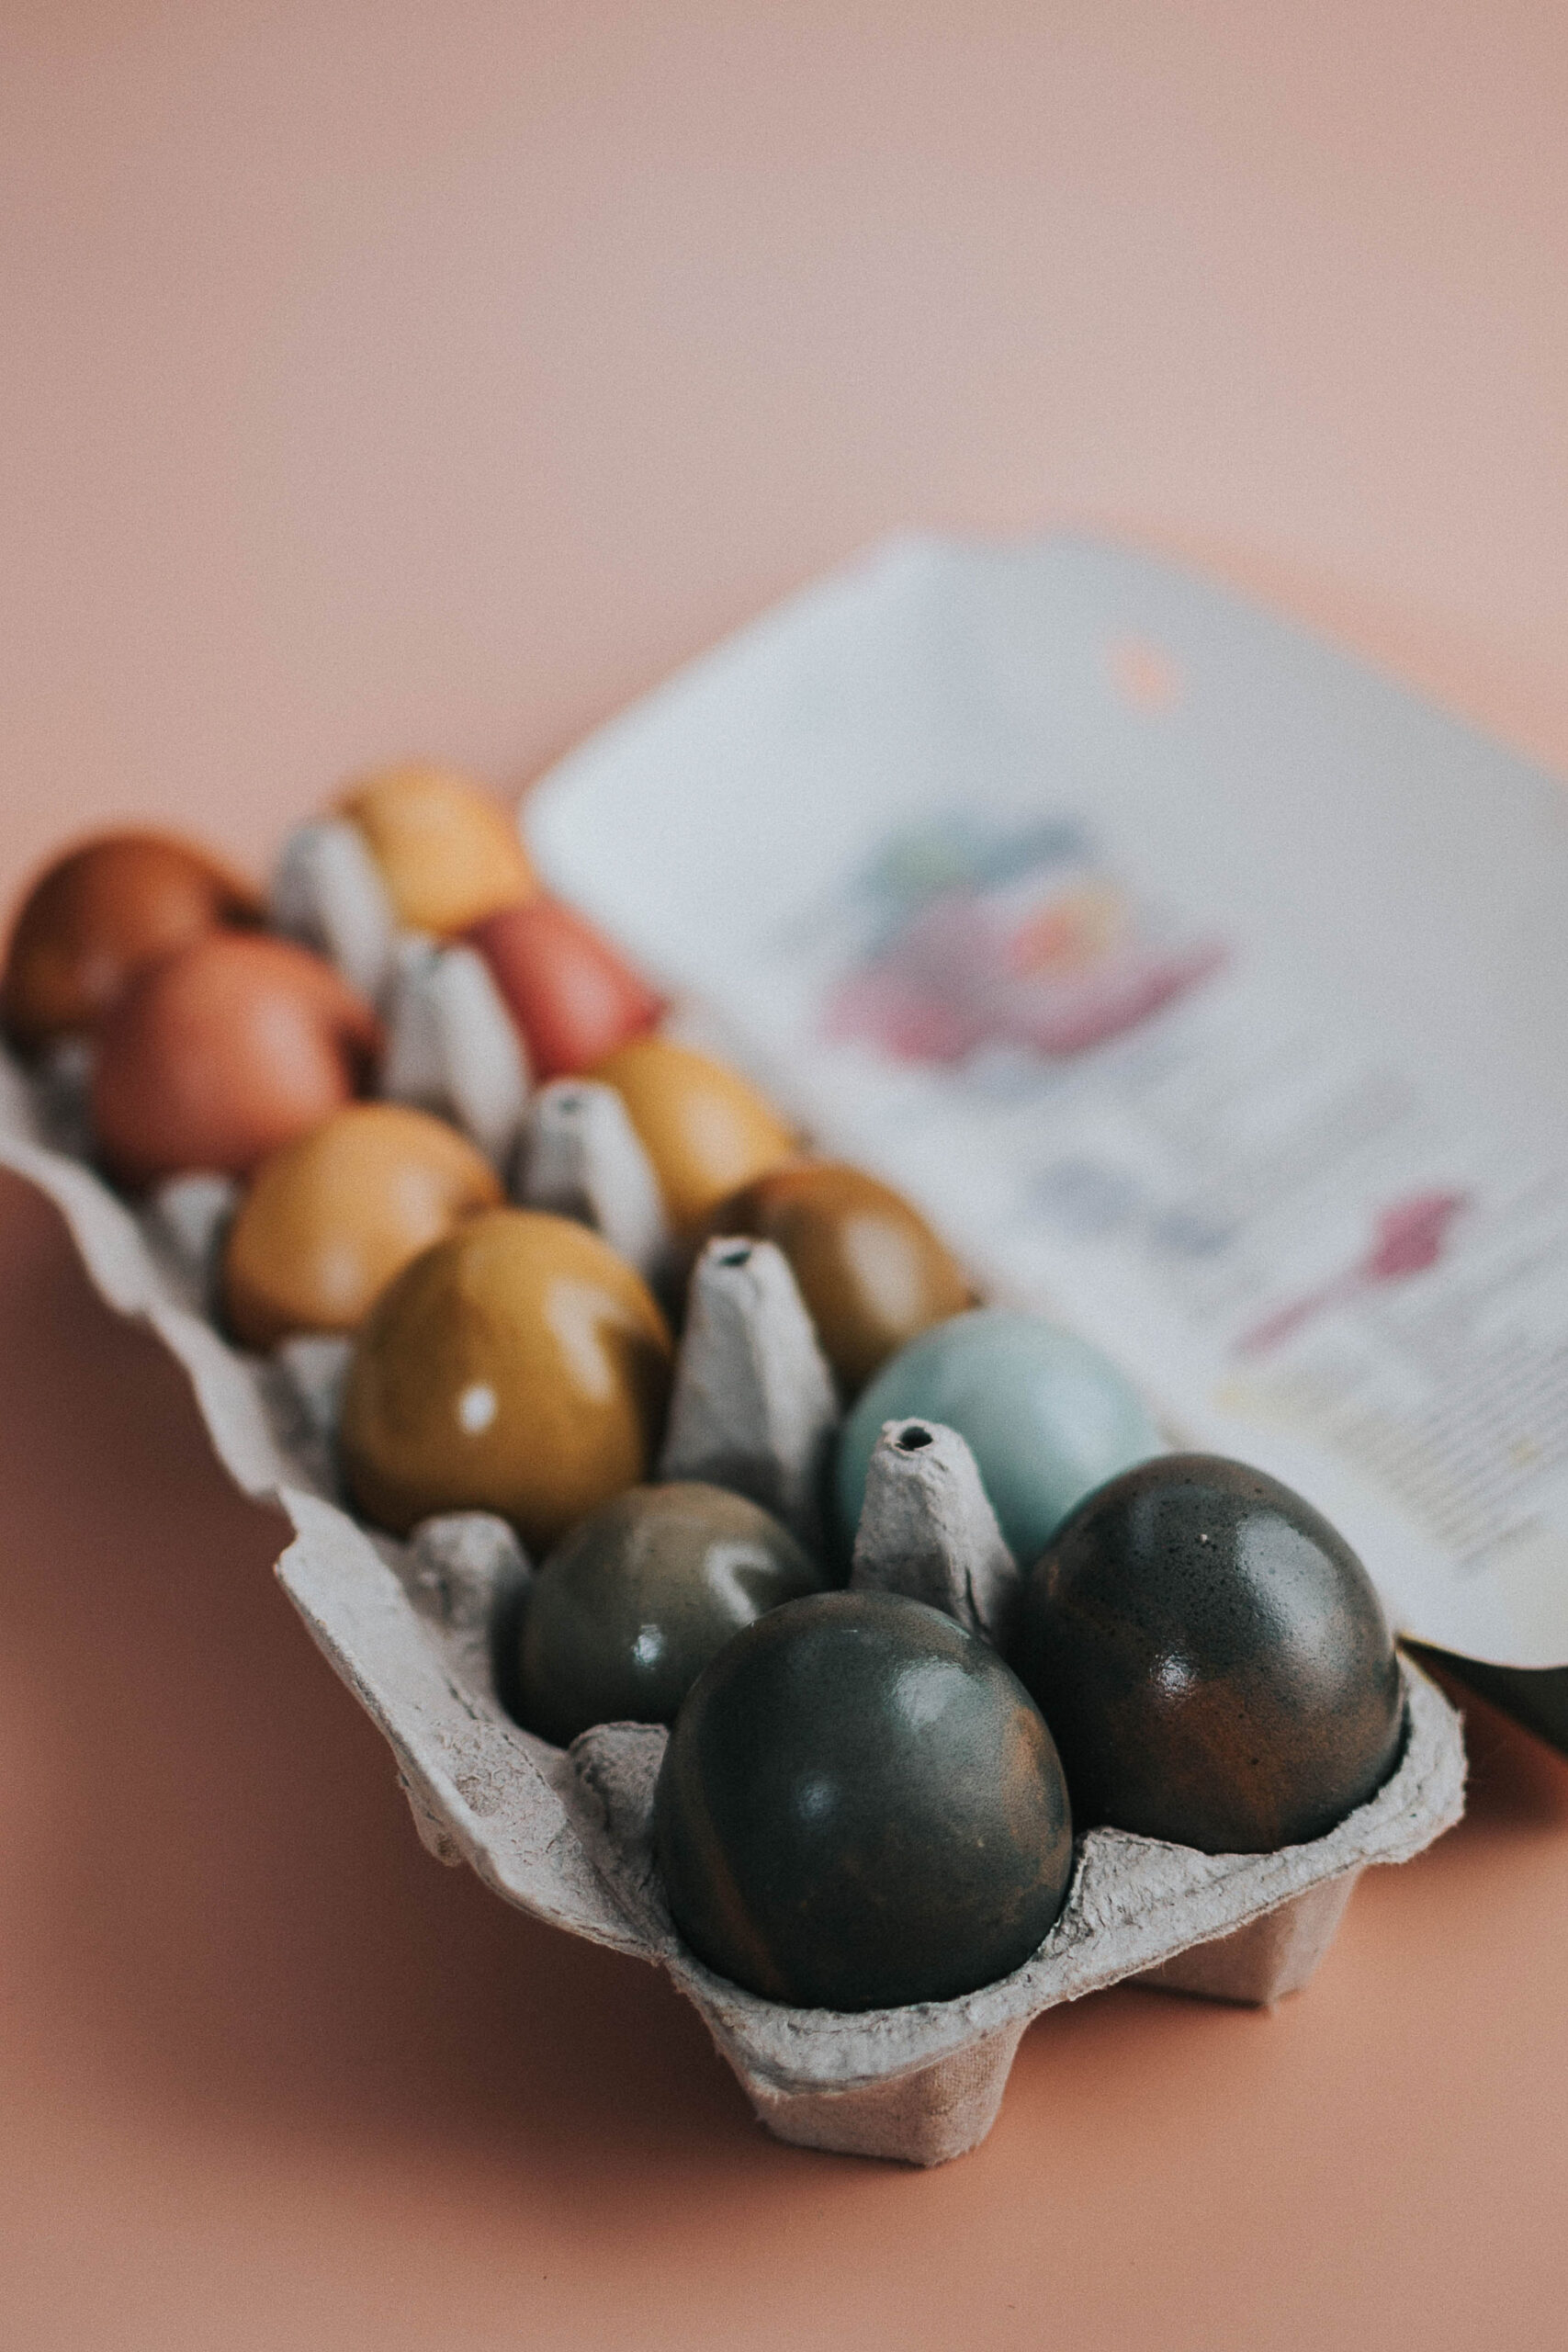 naturally dyed eggs in an egg carton